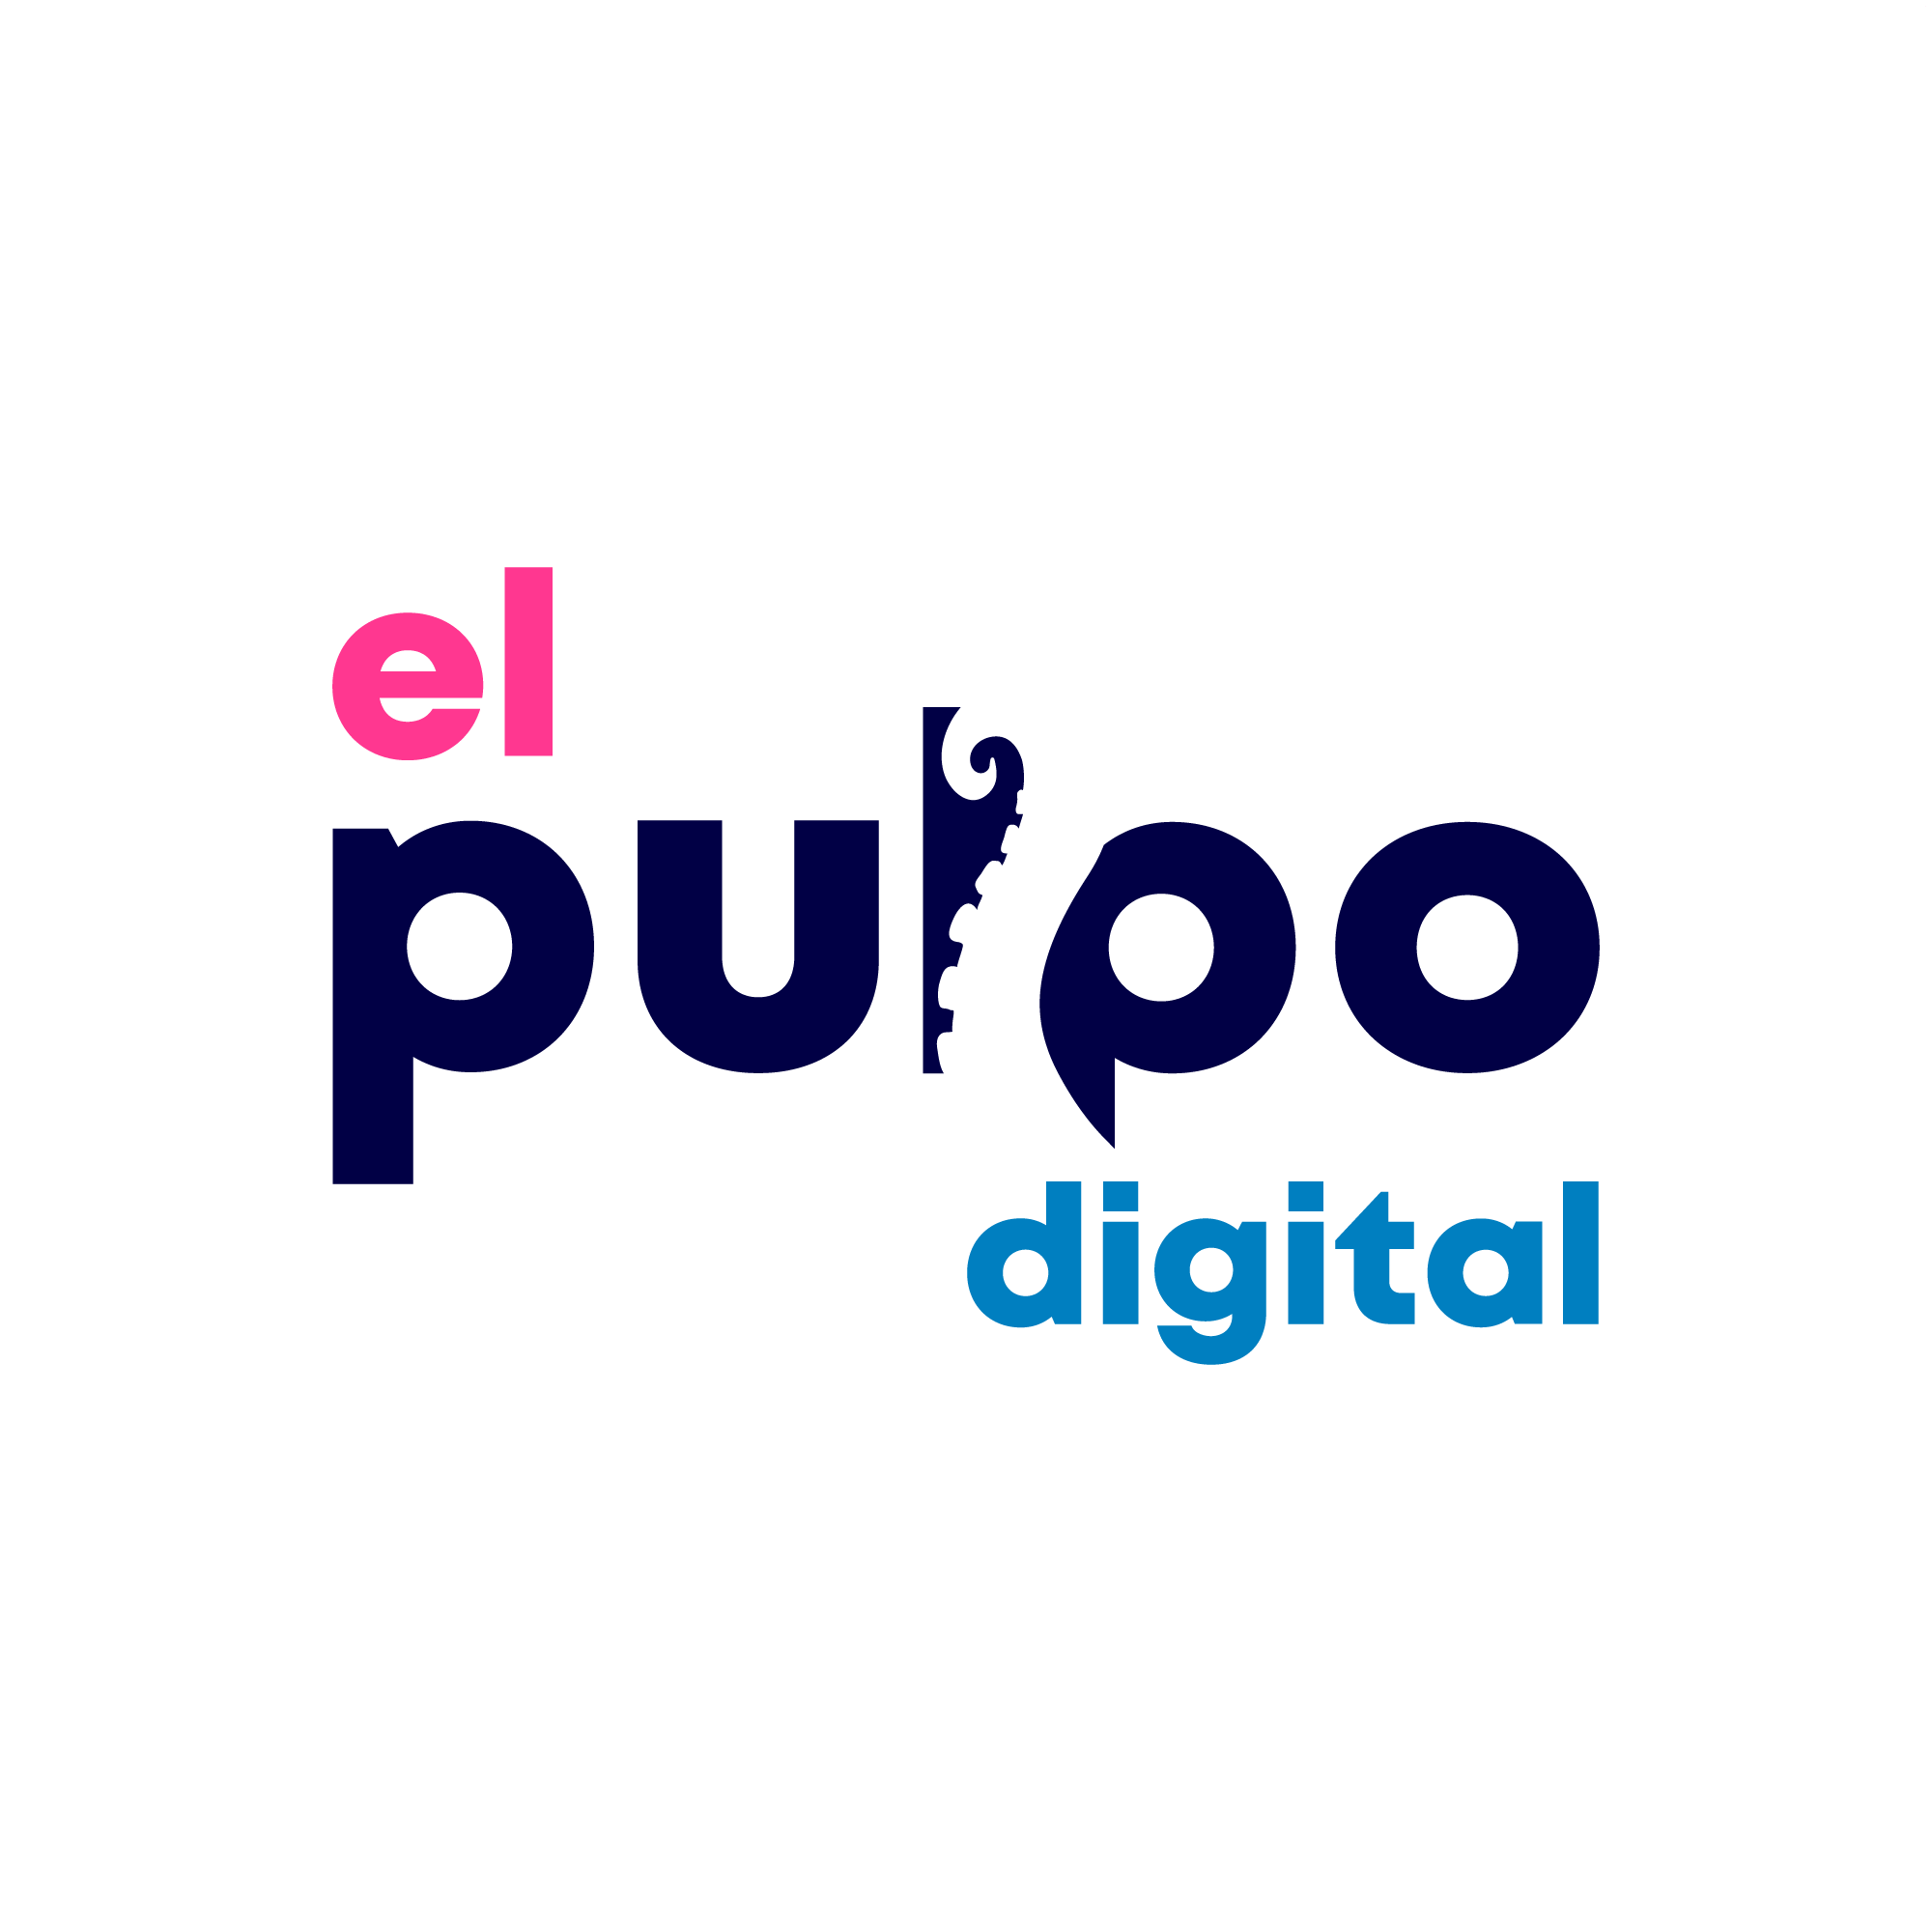 El Pulpo Digital